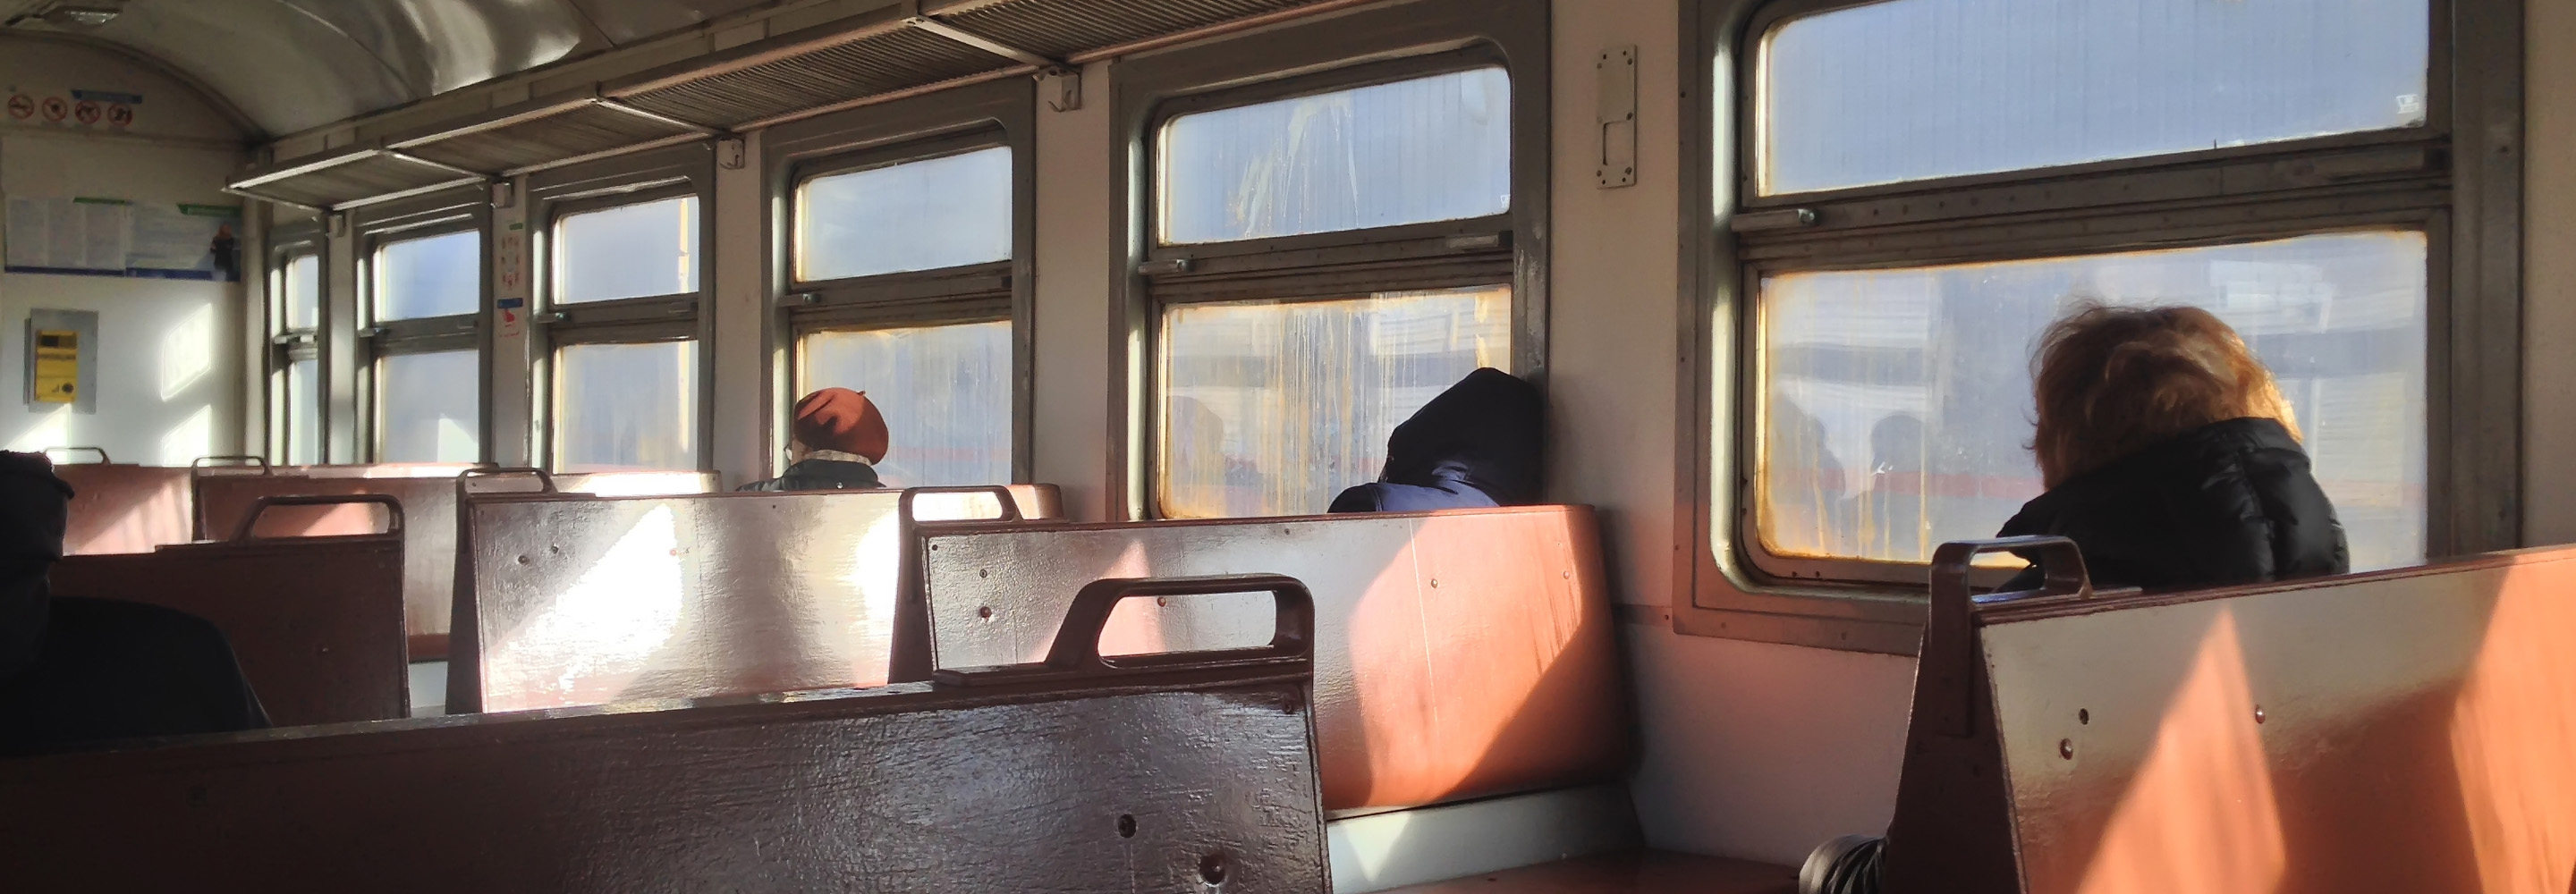 Видеонаблюдение в вагоне поезда | Алодис